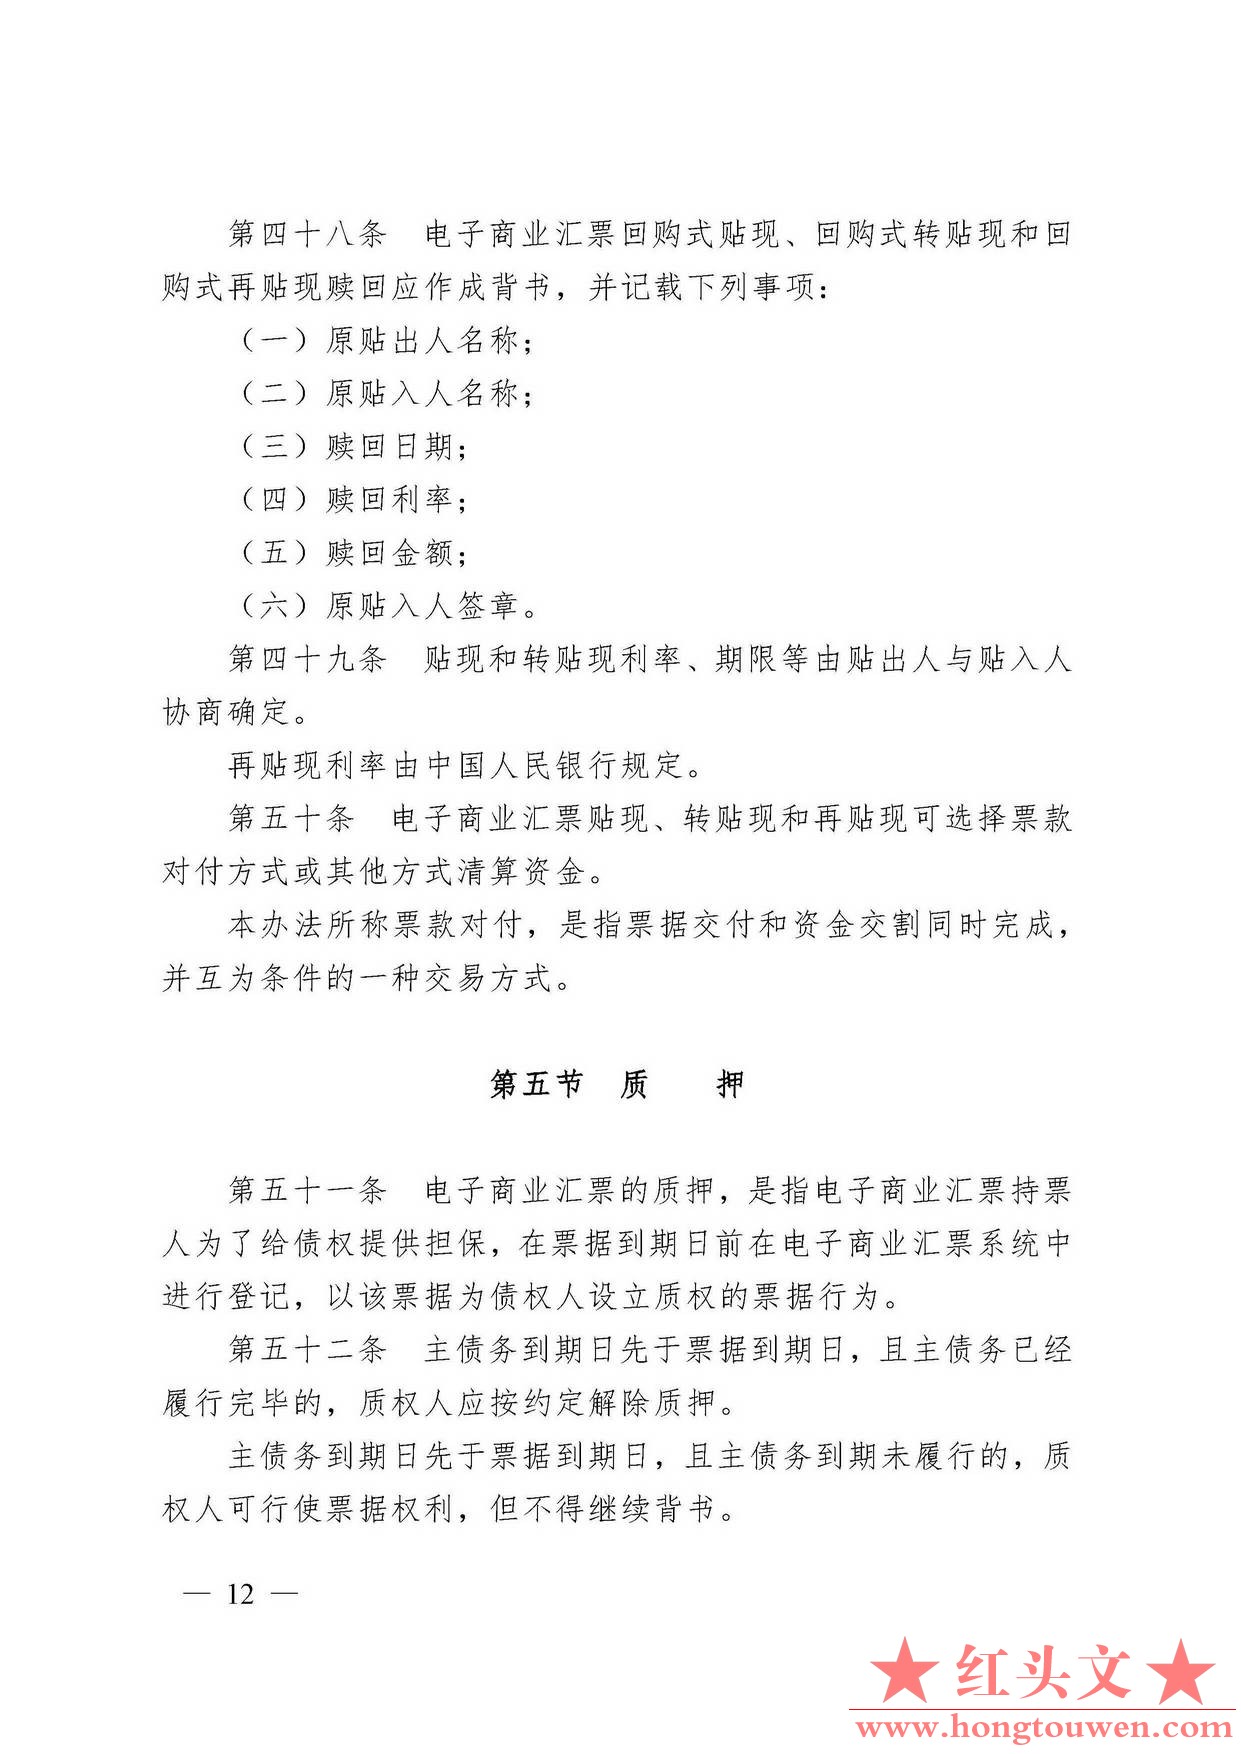 中国人民银行令[2009]2号-电子商业汇票管理办法_页面_12.jpg